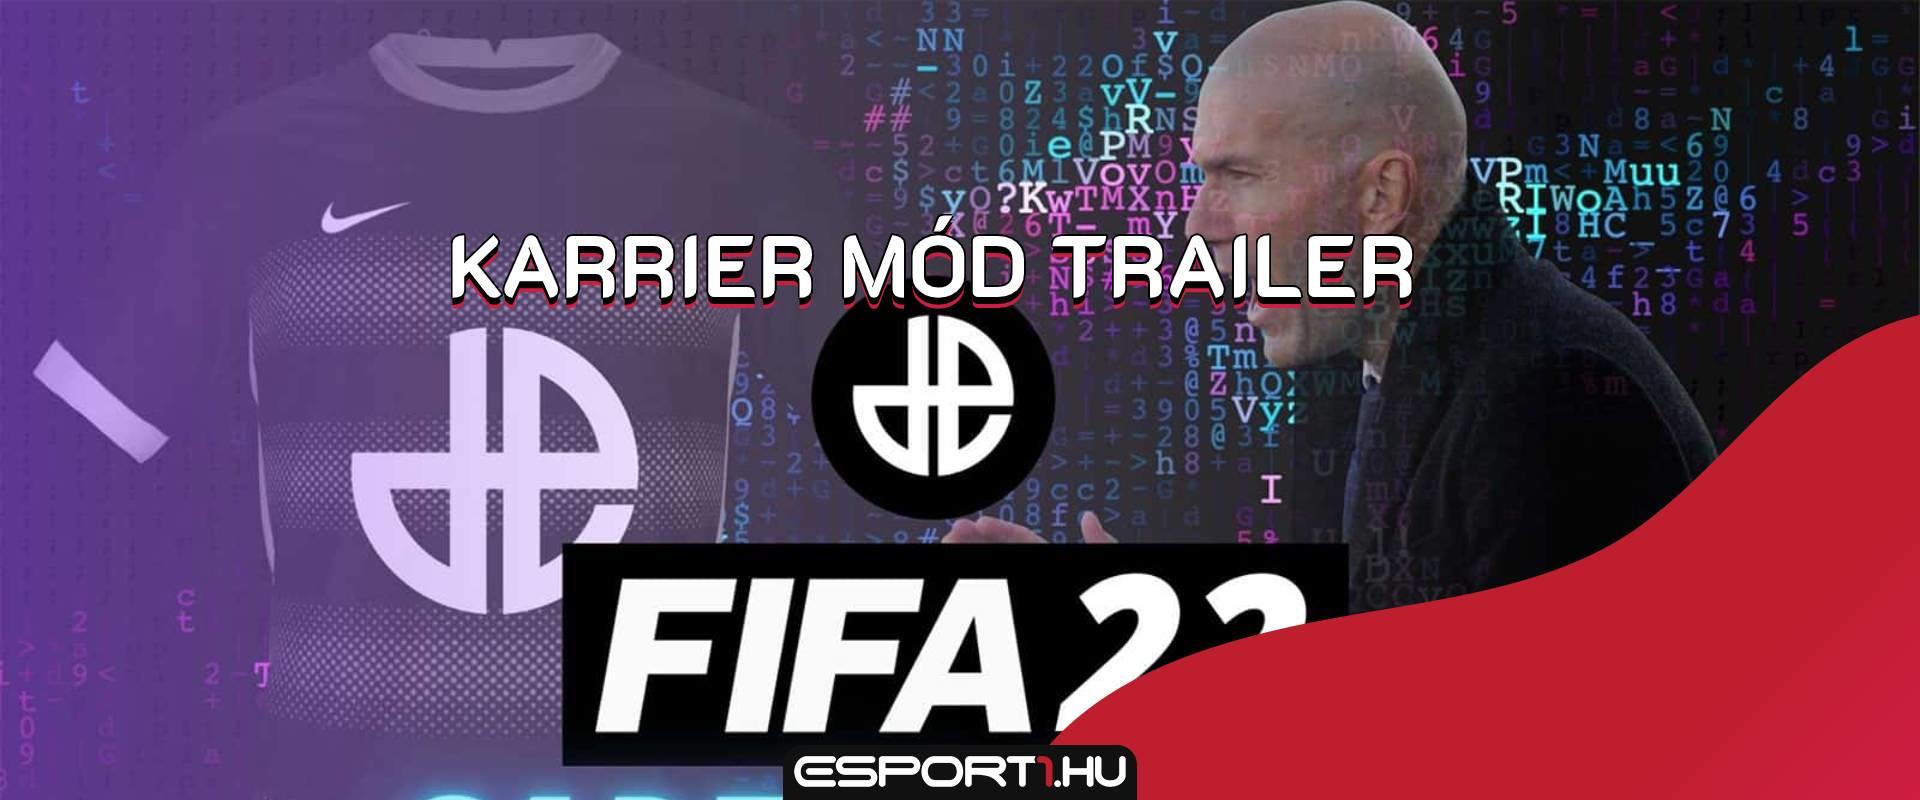 FIFA 22: új karrier mód trailer érkezett